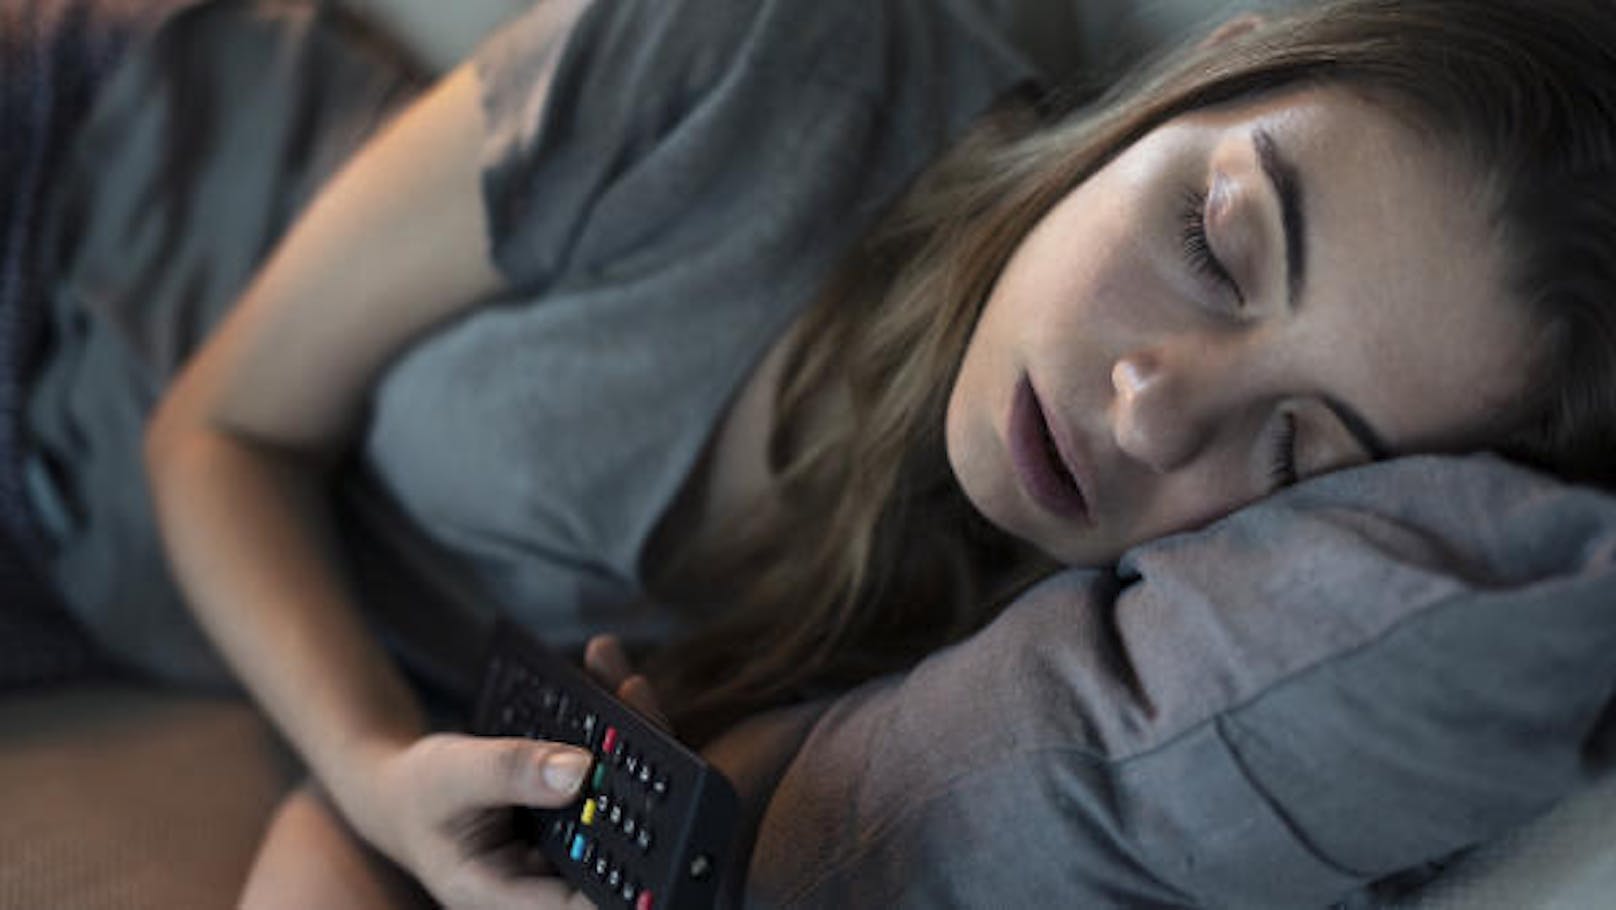 <b>2. Du schläfst mit einem laufenden Fernseher</b>
Wer regelmäßig mit einem leuchtenden Bildschirm einschläft, beeinflusst seine Schlafqualität negativ.